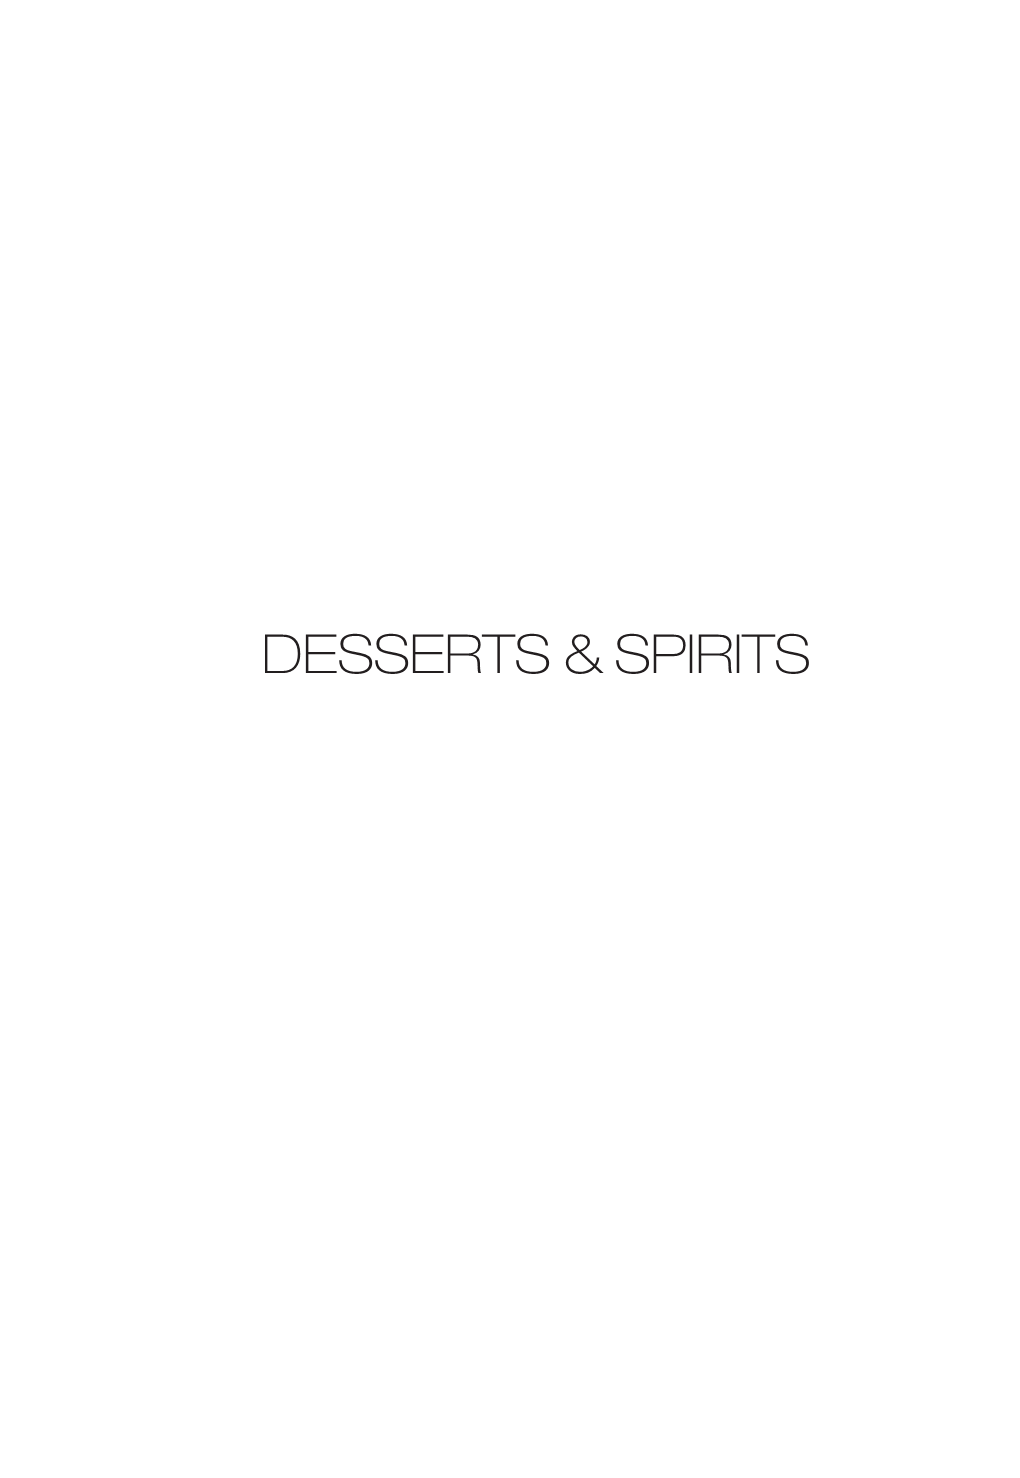 Desserts & Spirits